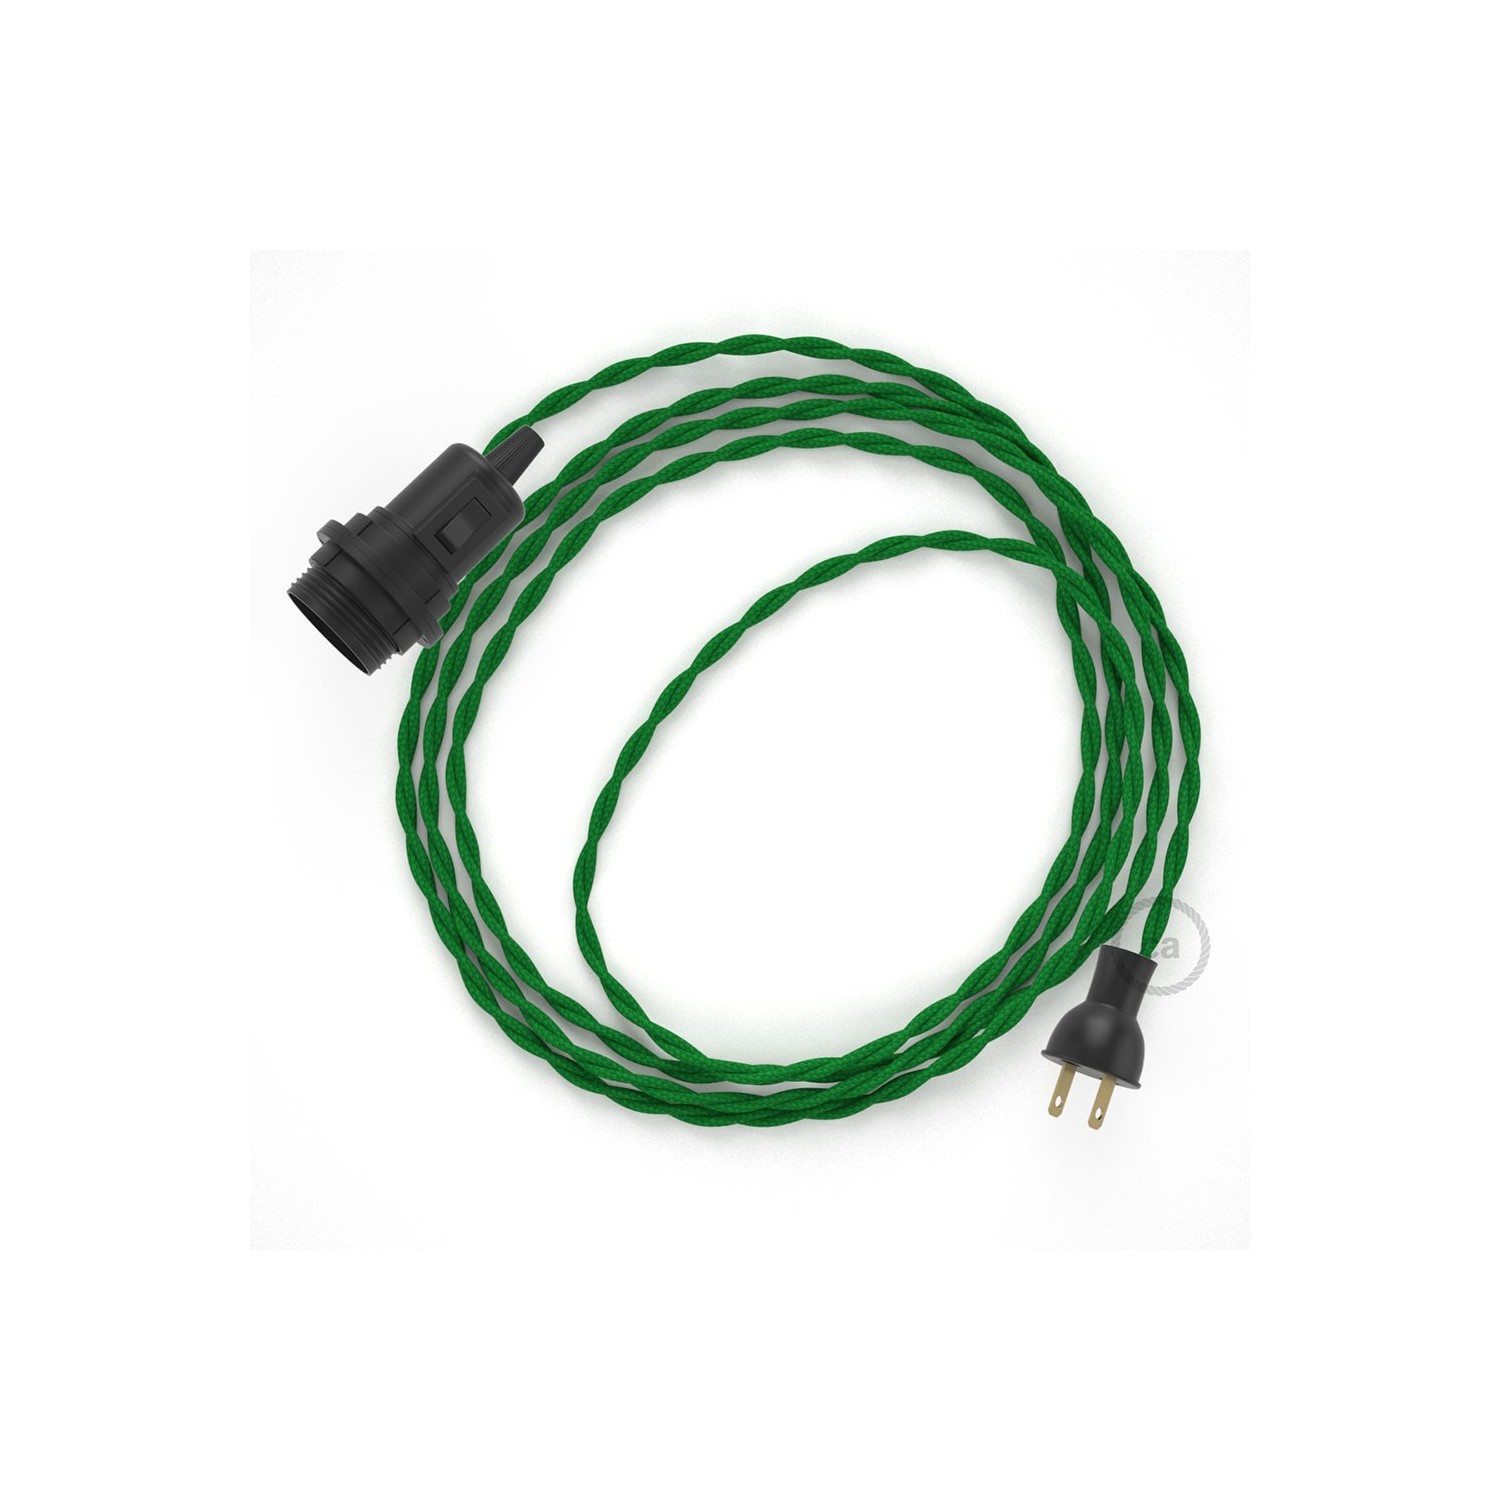 Crea tu Snake para pantalla con cable de Rayón Verde TM06, socket y enchufe, y trae la luz donde tu quieras.